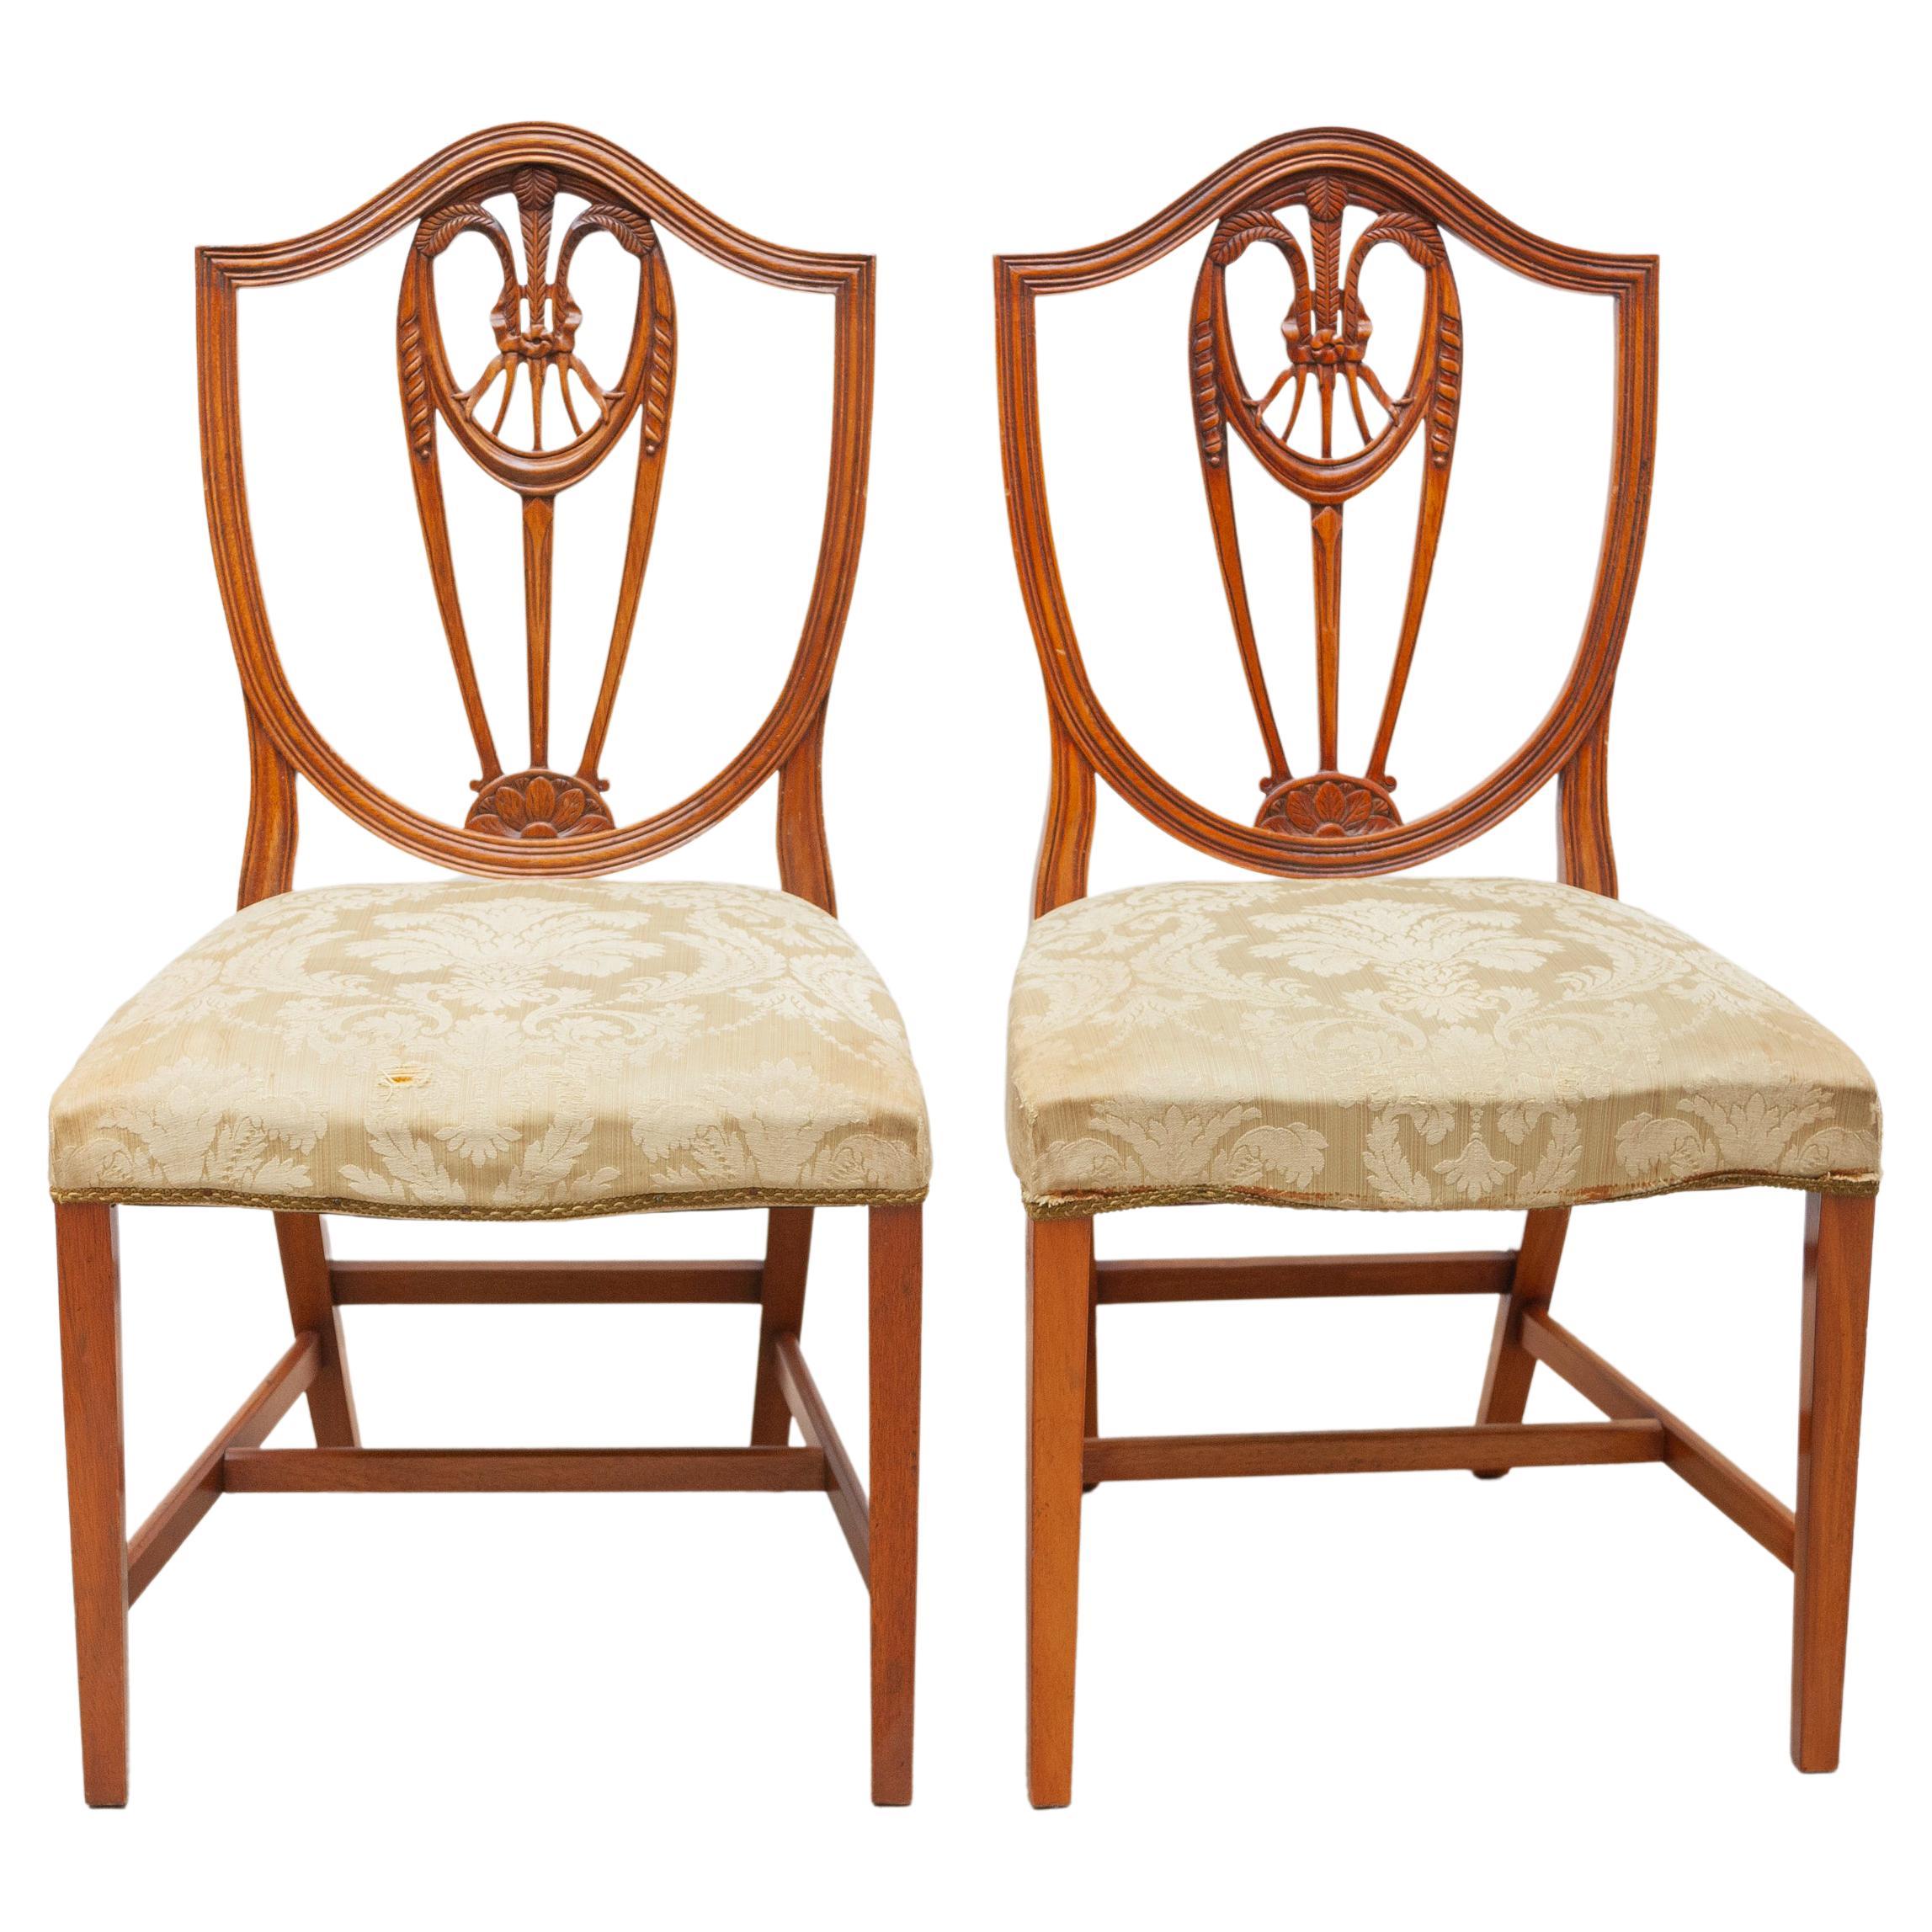 Ensemble de six chaises de salle à manger à dossier bouclier en forme de gerbe de blé, style Hepplewhite